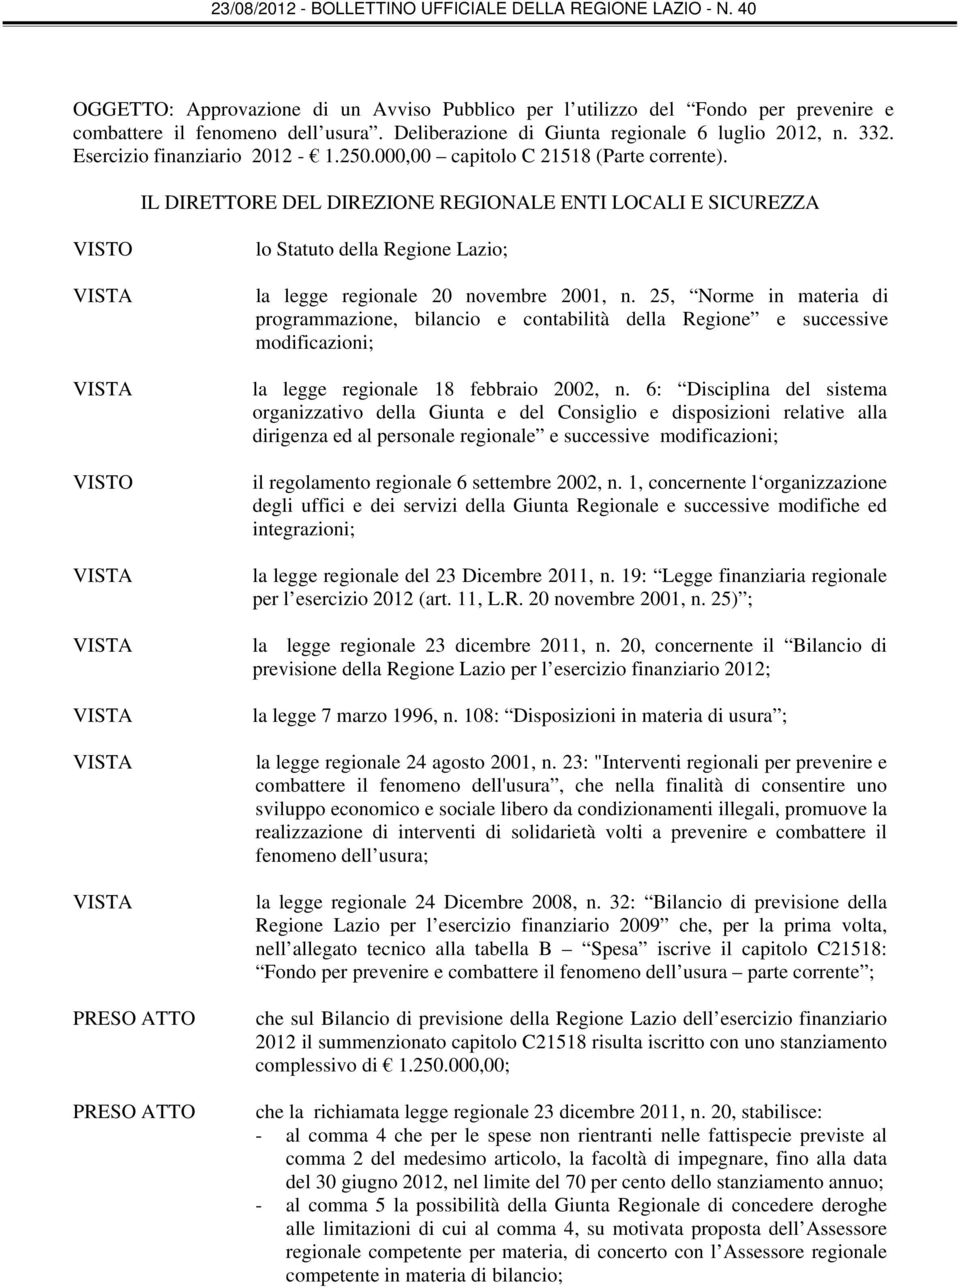 IL DIRETTORE DEL DIREZIONE REGIONALE ENTI LOCALI E SICUREZZA VISTO VISTO PRESO ATTO PRESO ATTO lo Statuto della Regione Lazio; la legge regionale 20 novembre 2001, n.